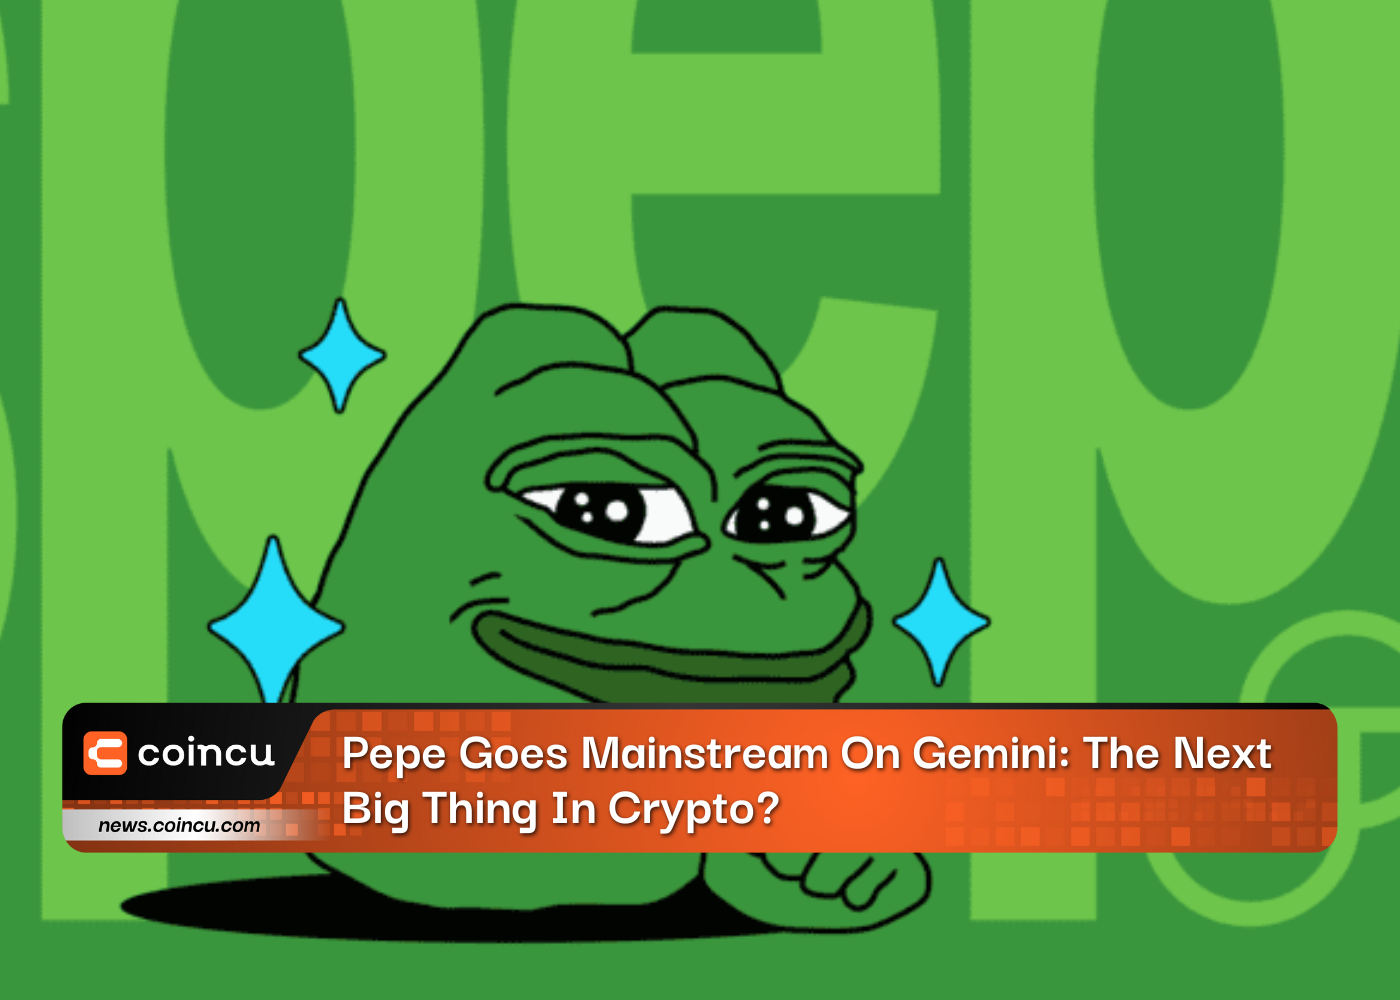 Pepe se torna popular no Gemini: a próxima grande novidade na criptografia?